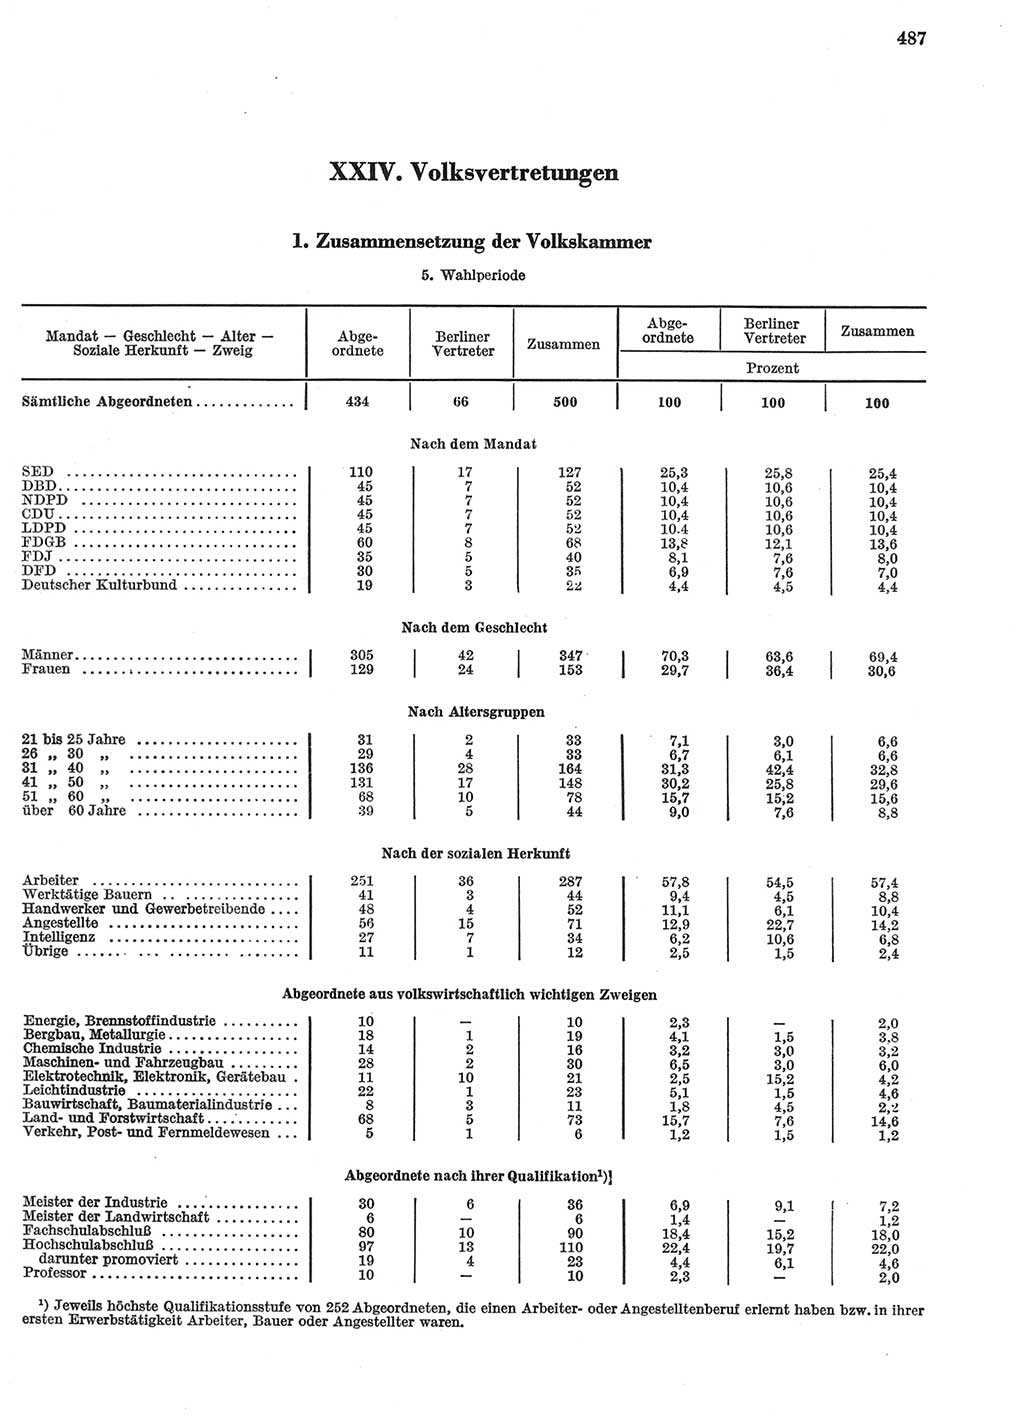 Statistisches Jahrbuch der Deutschen Demokratischen Republik (DDR) 1969, Seite 487 (Stat. Jb. DDR 1969, S. 487)